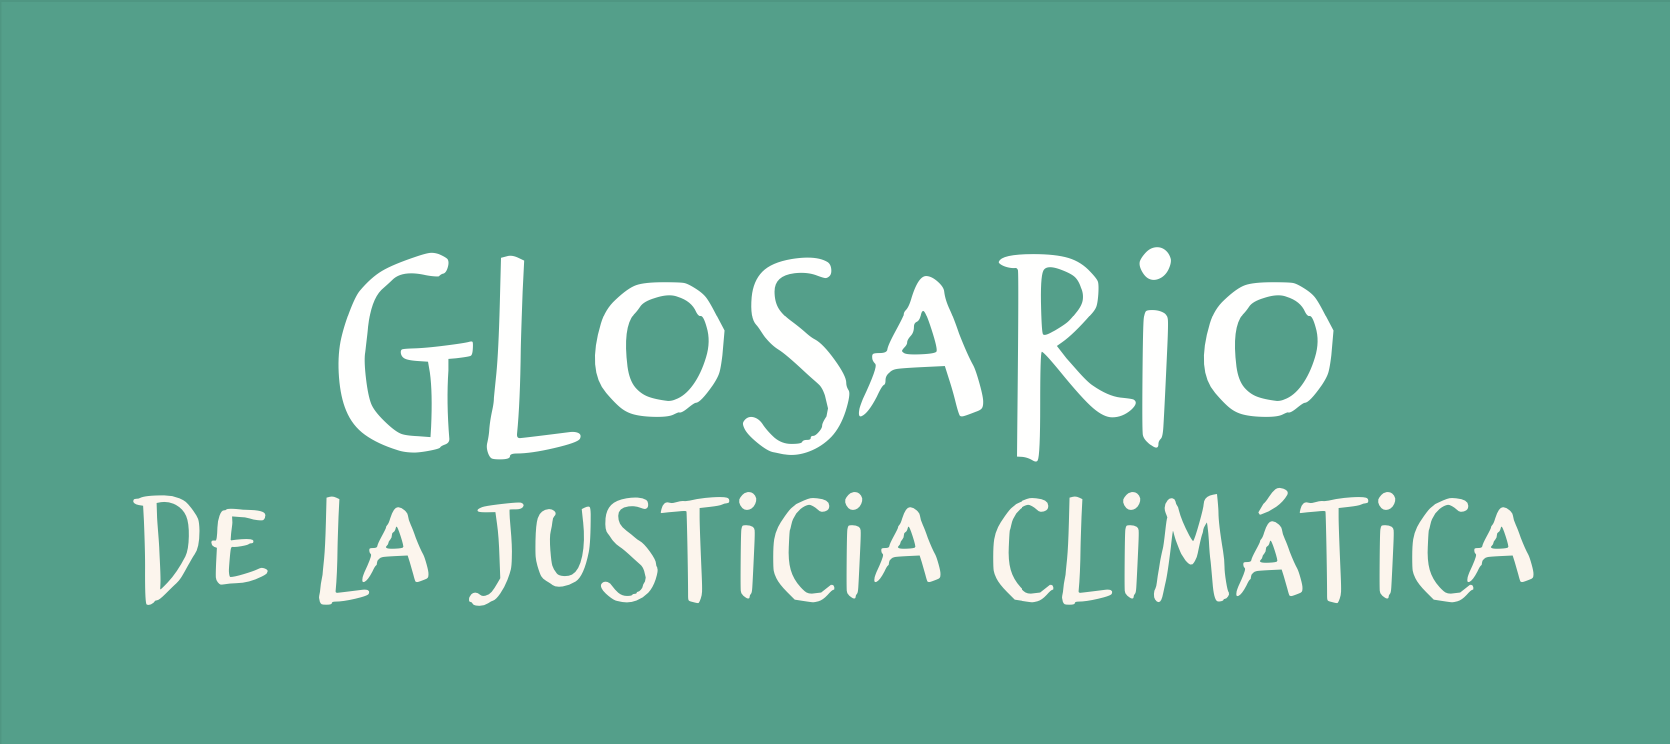 Glosario de la justicia climática